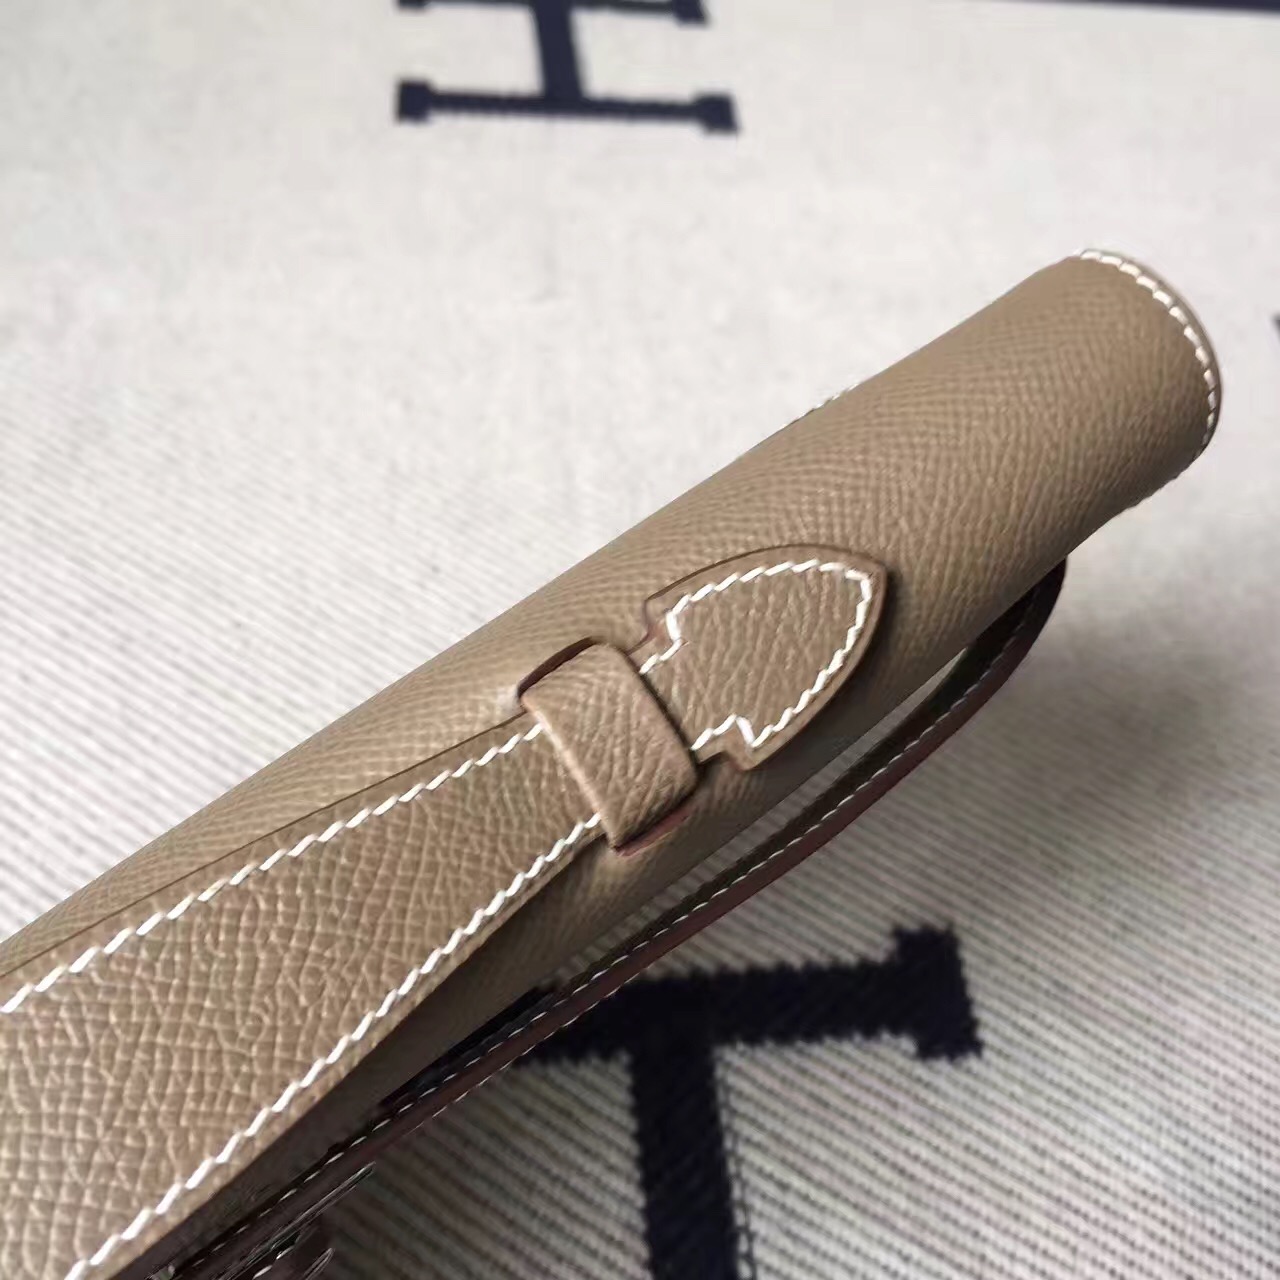 Hand Stitching Hermes C81 Etoupe Grey Epsom Leather Kelly Cut Handbag 31cm